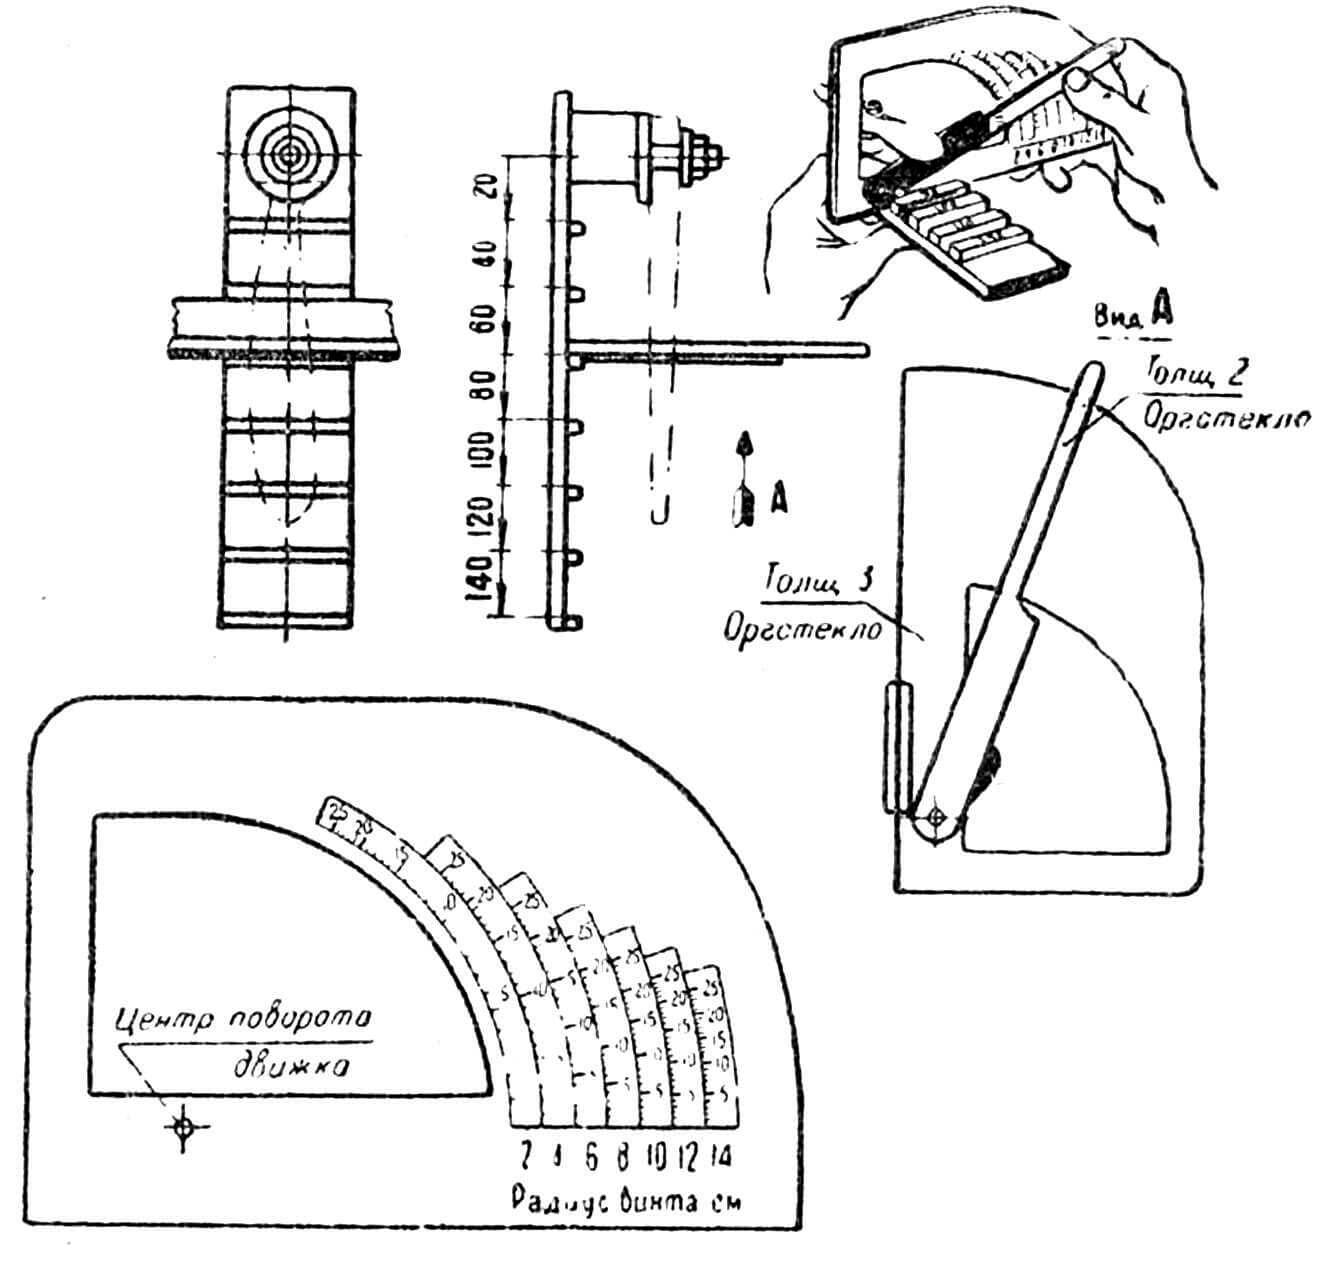 Рис. 14. Прибор для определения и проверки шага винта диаметром до 280 мм.